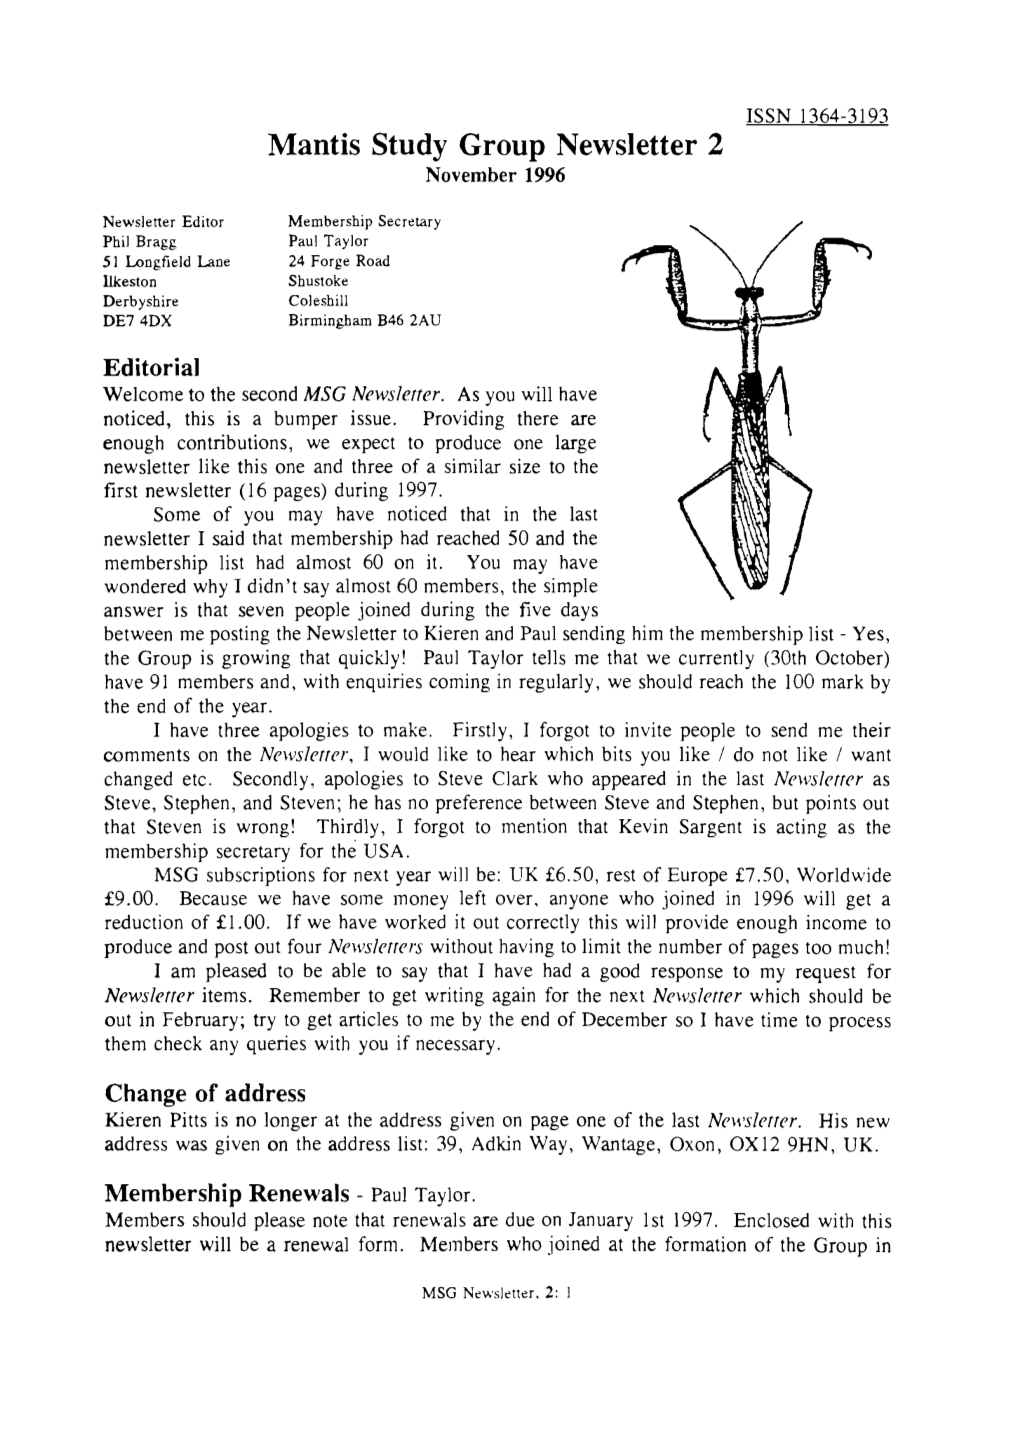 Mantis Study Group Newsletter, 2 (November 1996)